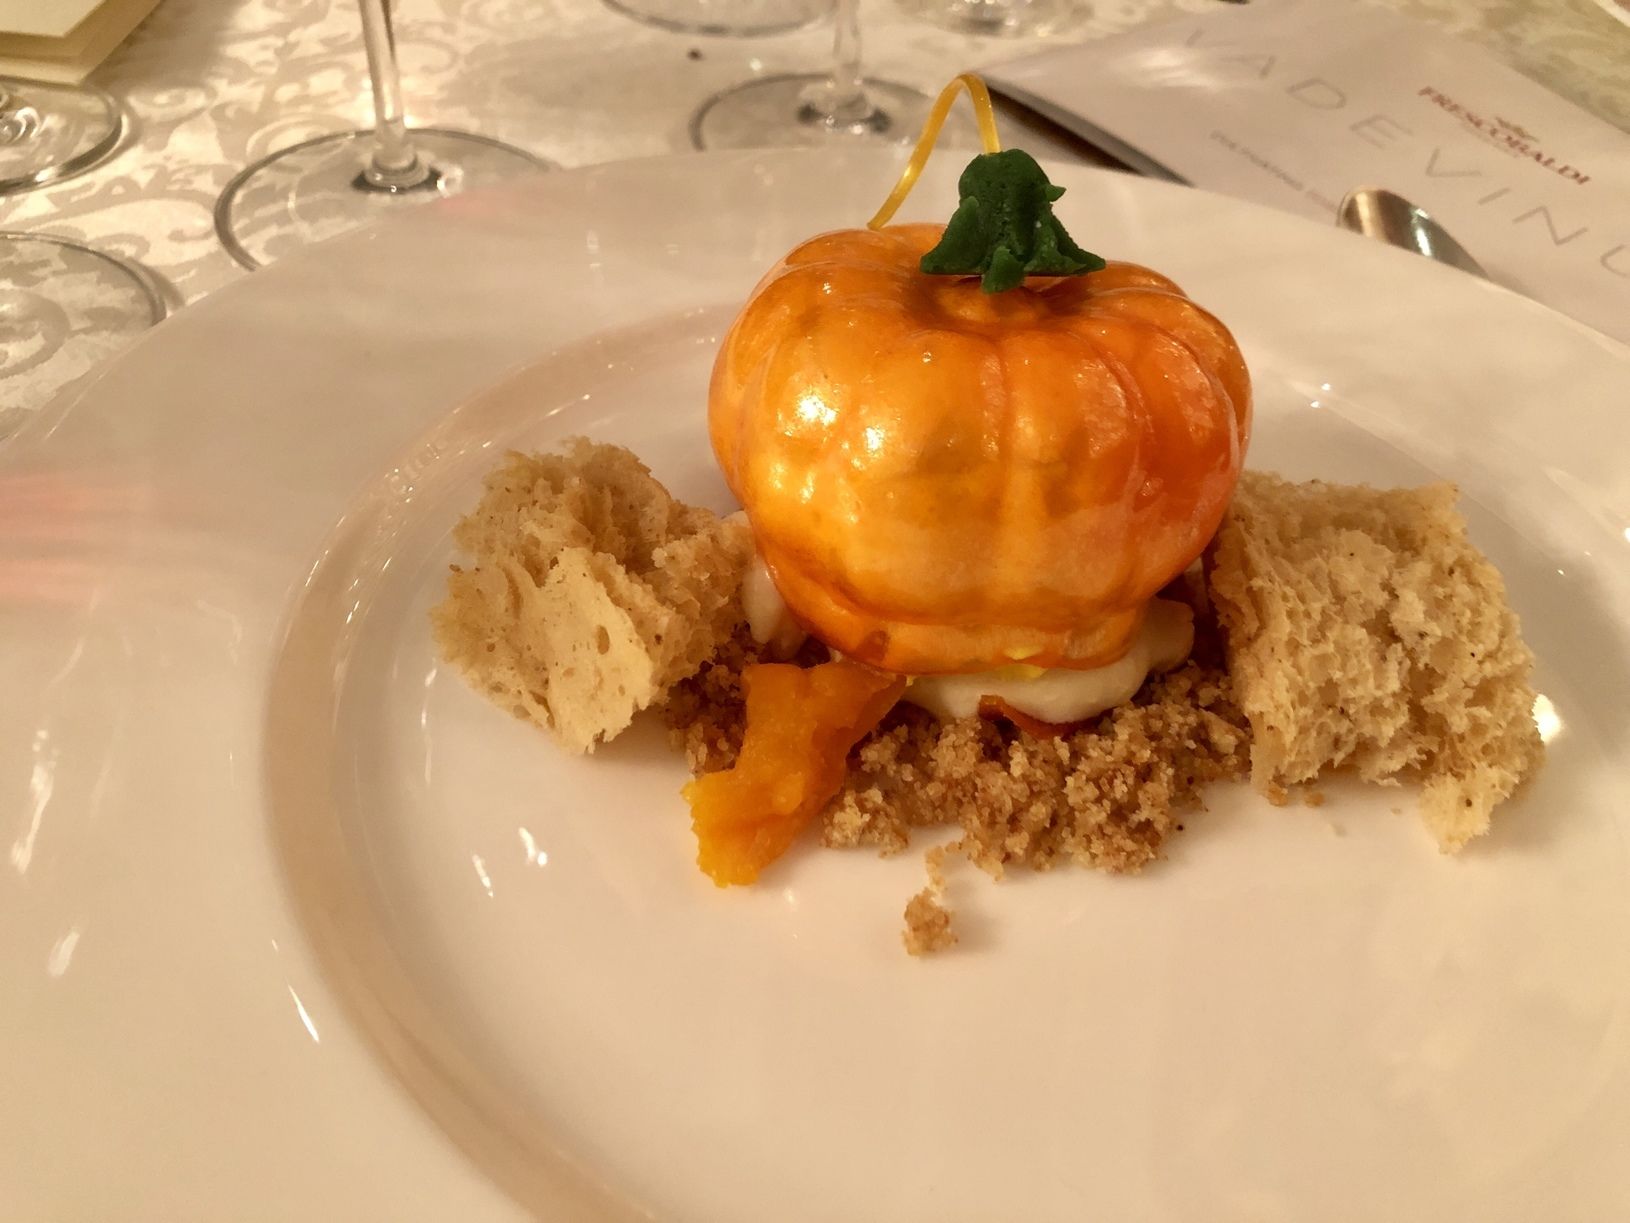 Удивительный десерт под названием «Тыква, фундук, коньяк», оказался нежнейшим суфле в очень тонком карамельном панцире. С ним сошлось Mormoretto 2015